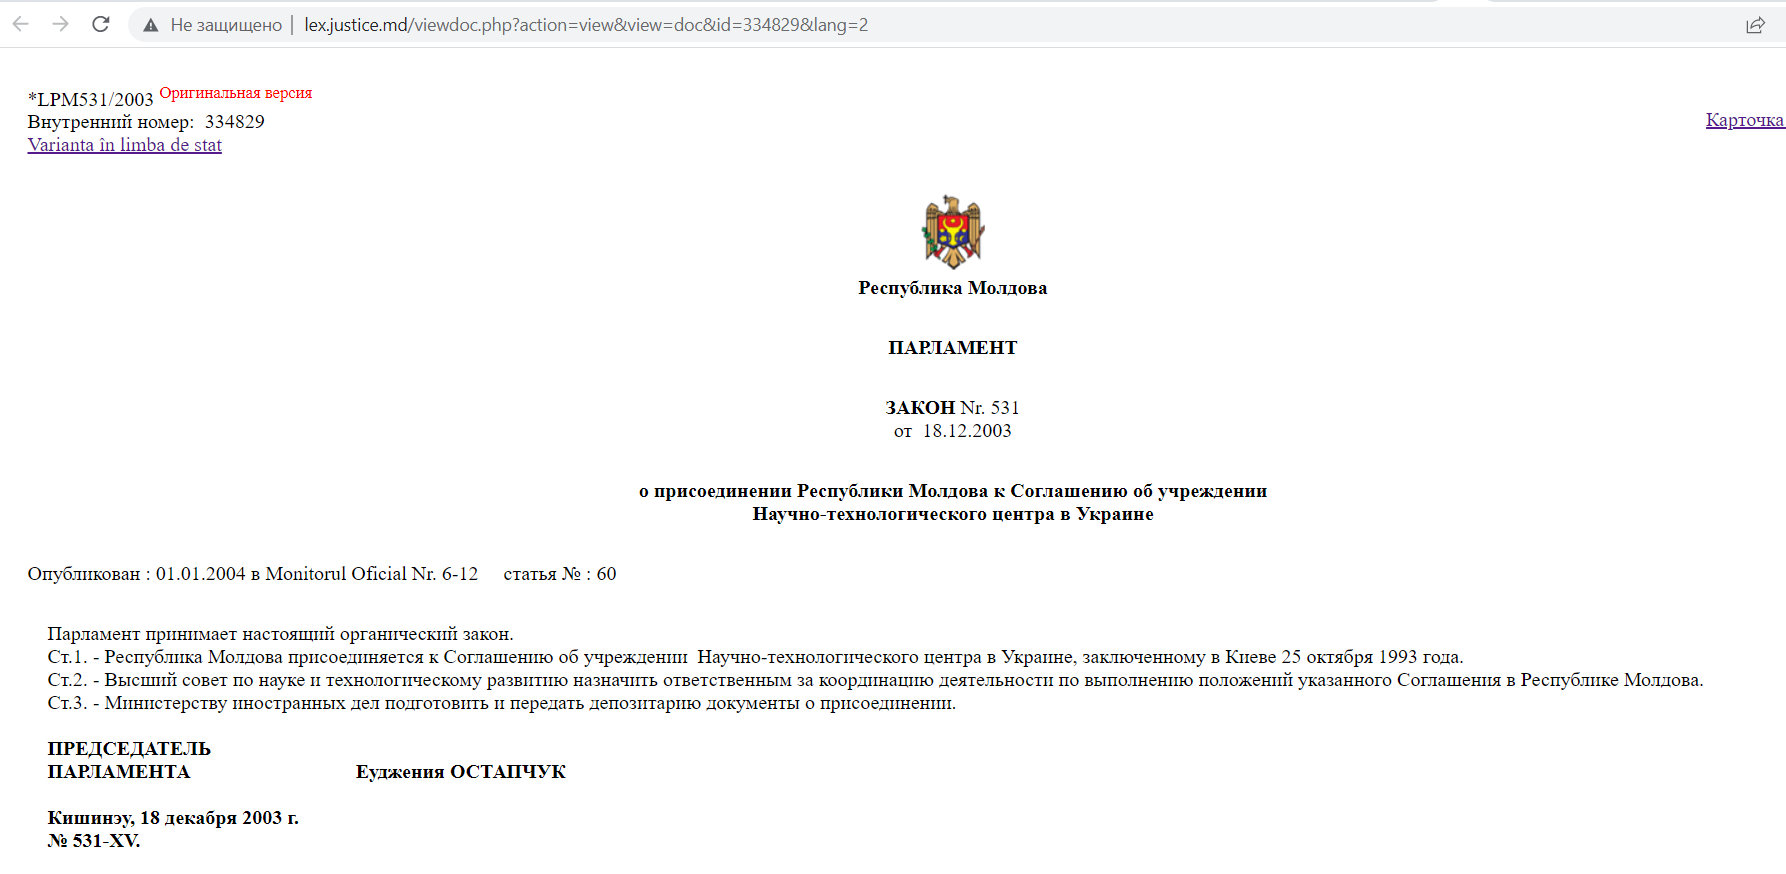 Скриншот титульного листа закона №531, принятого парламентом Республики Молдавия, lexjustice.md